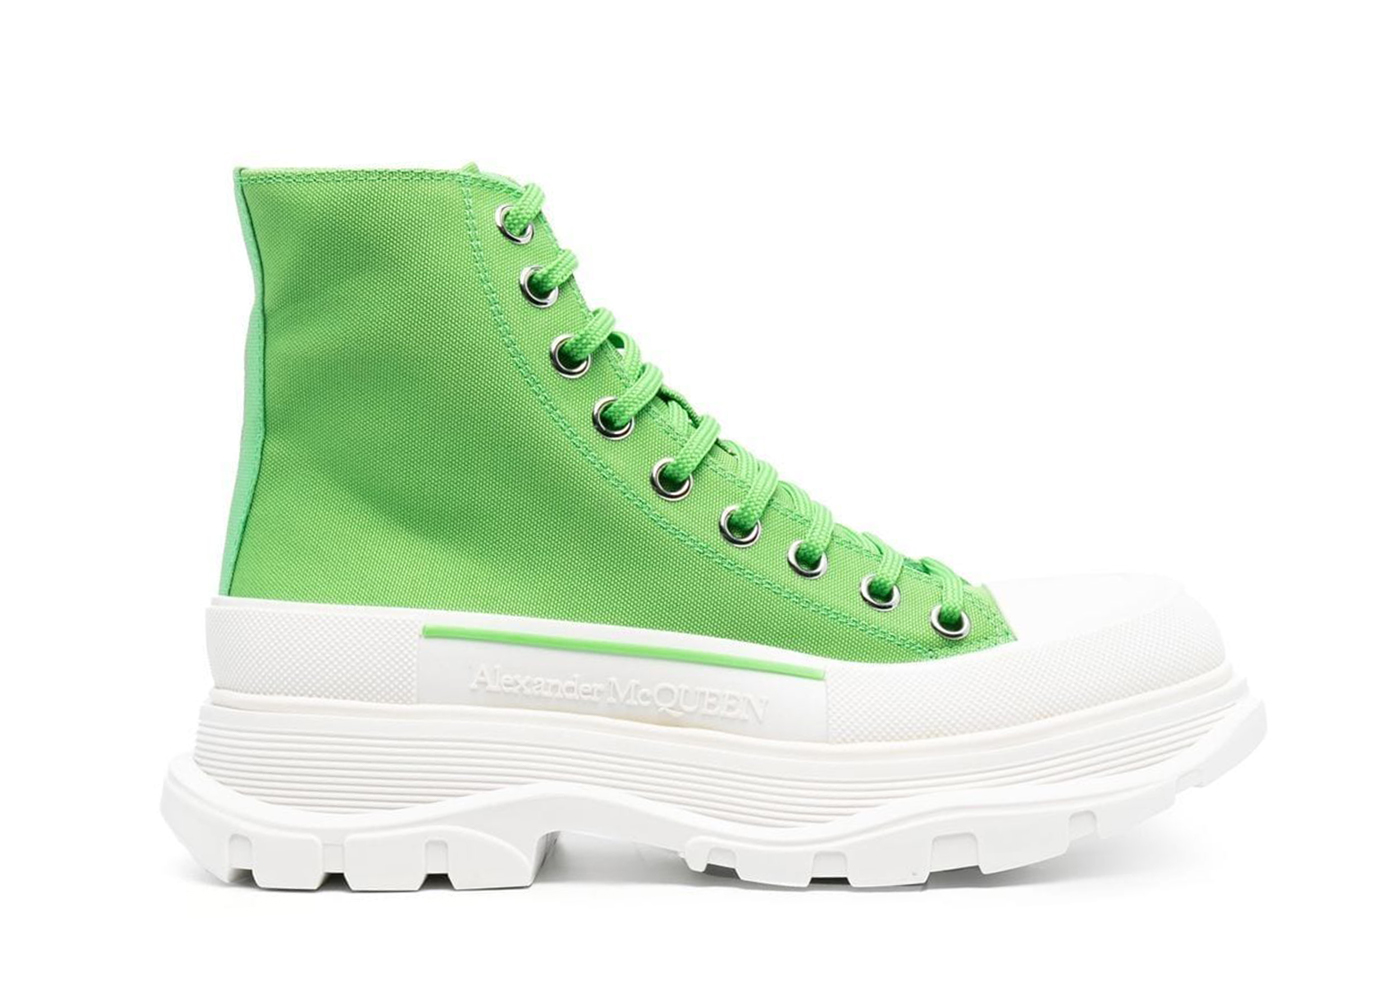 Alexander McQueen Tread Slick leather sneakers - Green